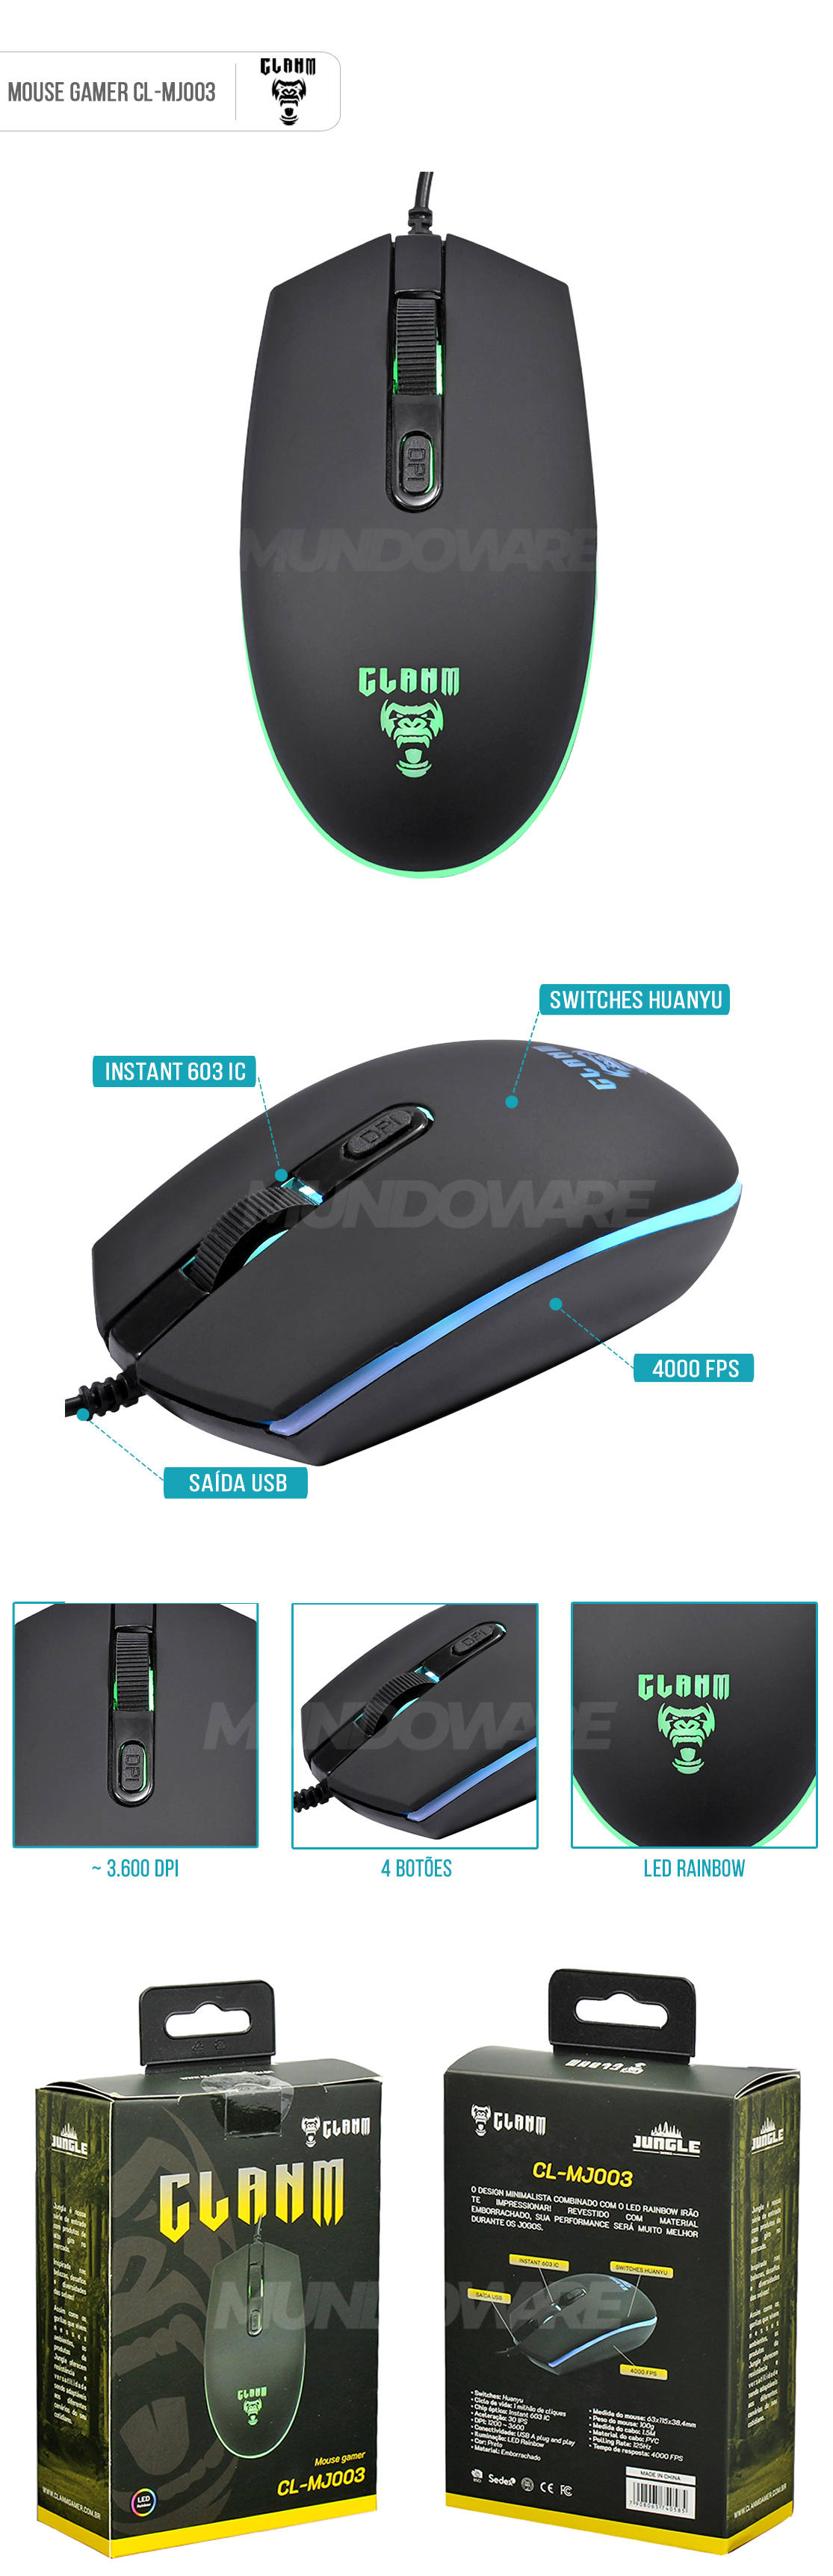 Mouse Gamer 4 Botões LED Rainbow até 3600 DPI Emborrachado Clanm CL-MJ003